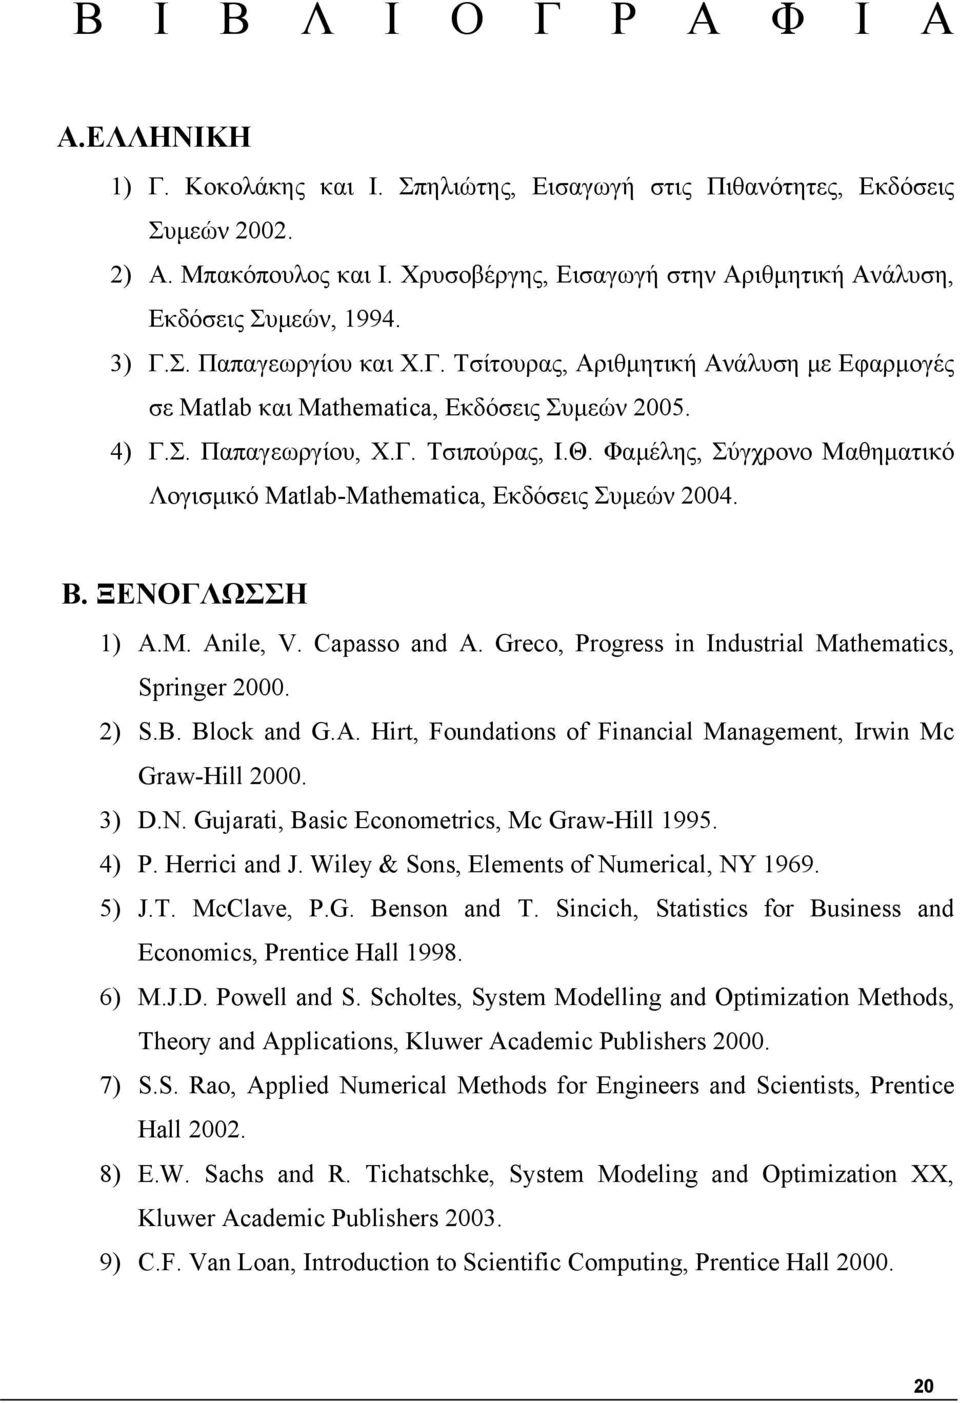 Γ. Τσιπούρας, Ι.Θ. Φαμέλης, Σύγχρονο Μαθηματικό Λογισμικό Matlab-Mathematia, Εκδόσεις Συμεών 2004. Β. ΞΕΝΟΓΛΩΣΣΗ 1) A.M. Anile, V. Capasso and A.